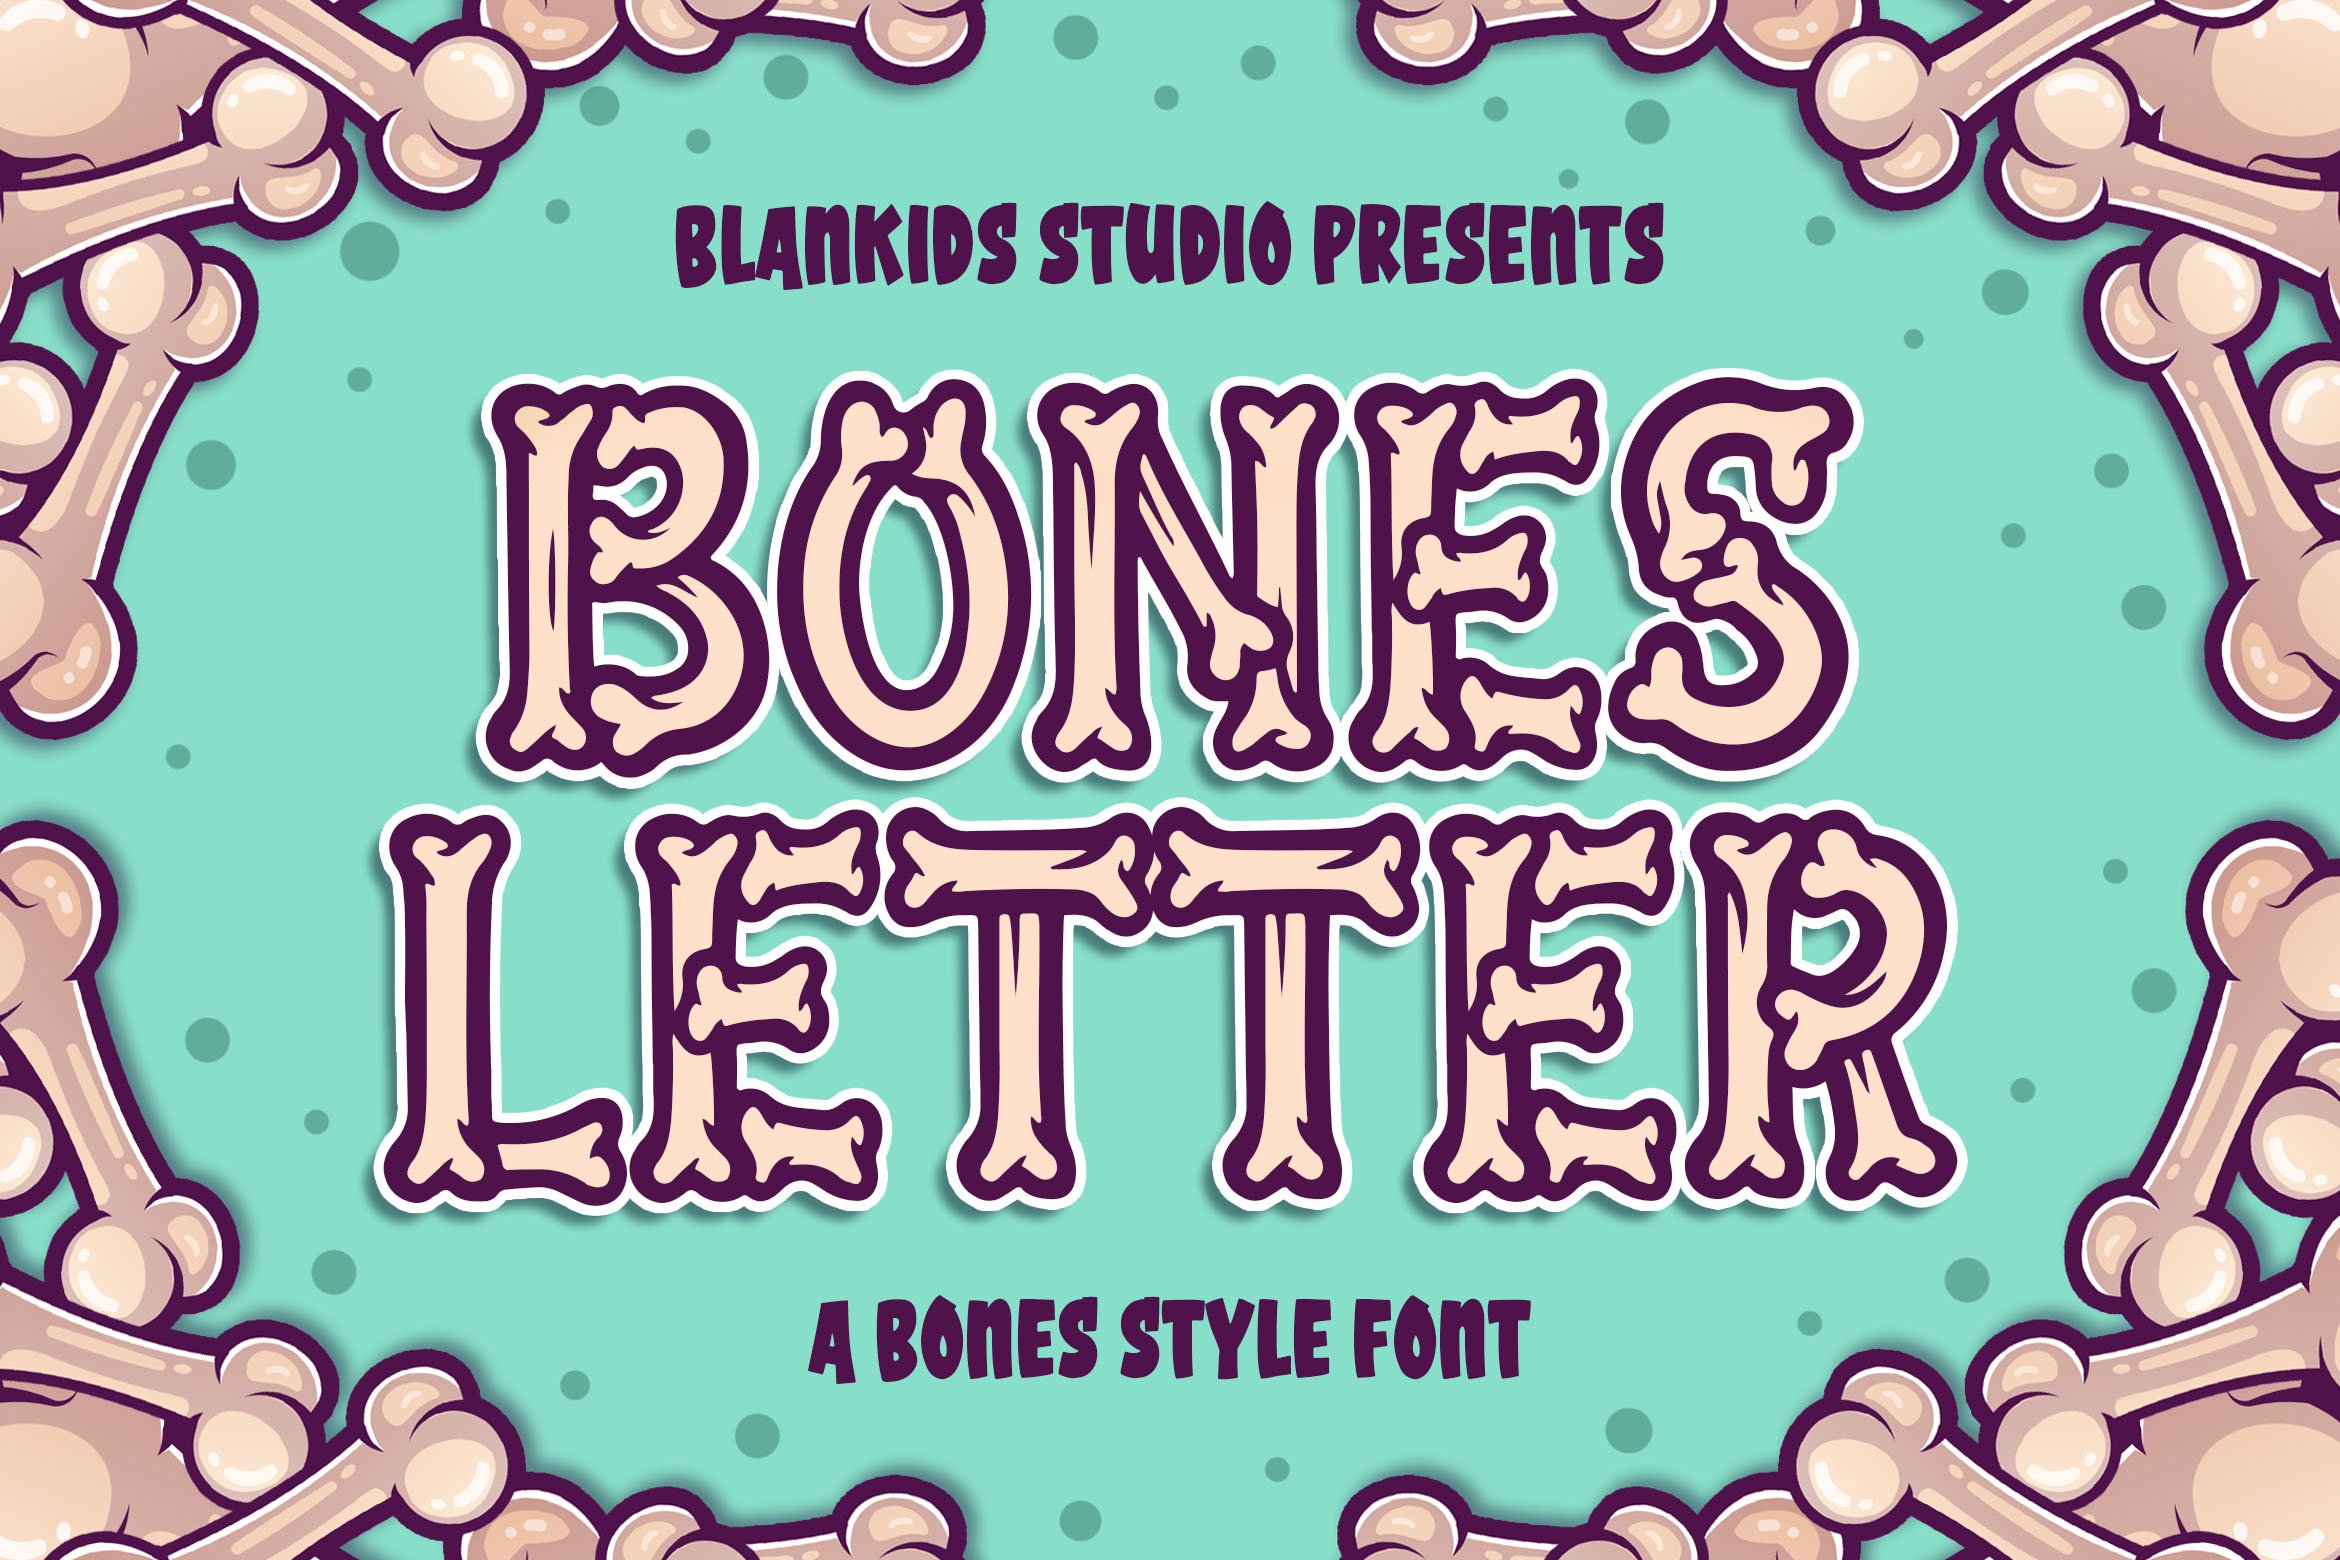 Bones Letter a Bones Style Font cover image.